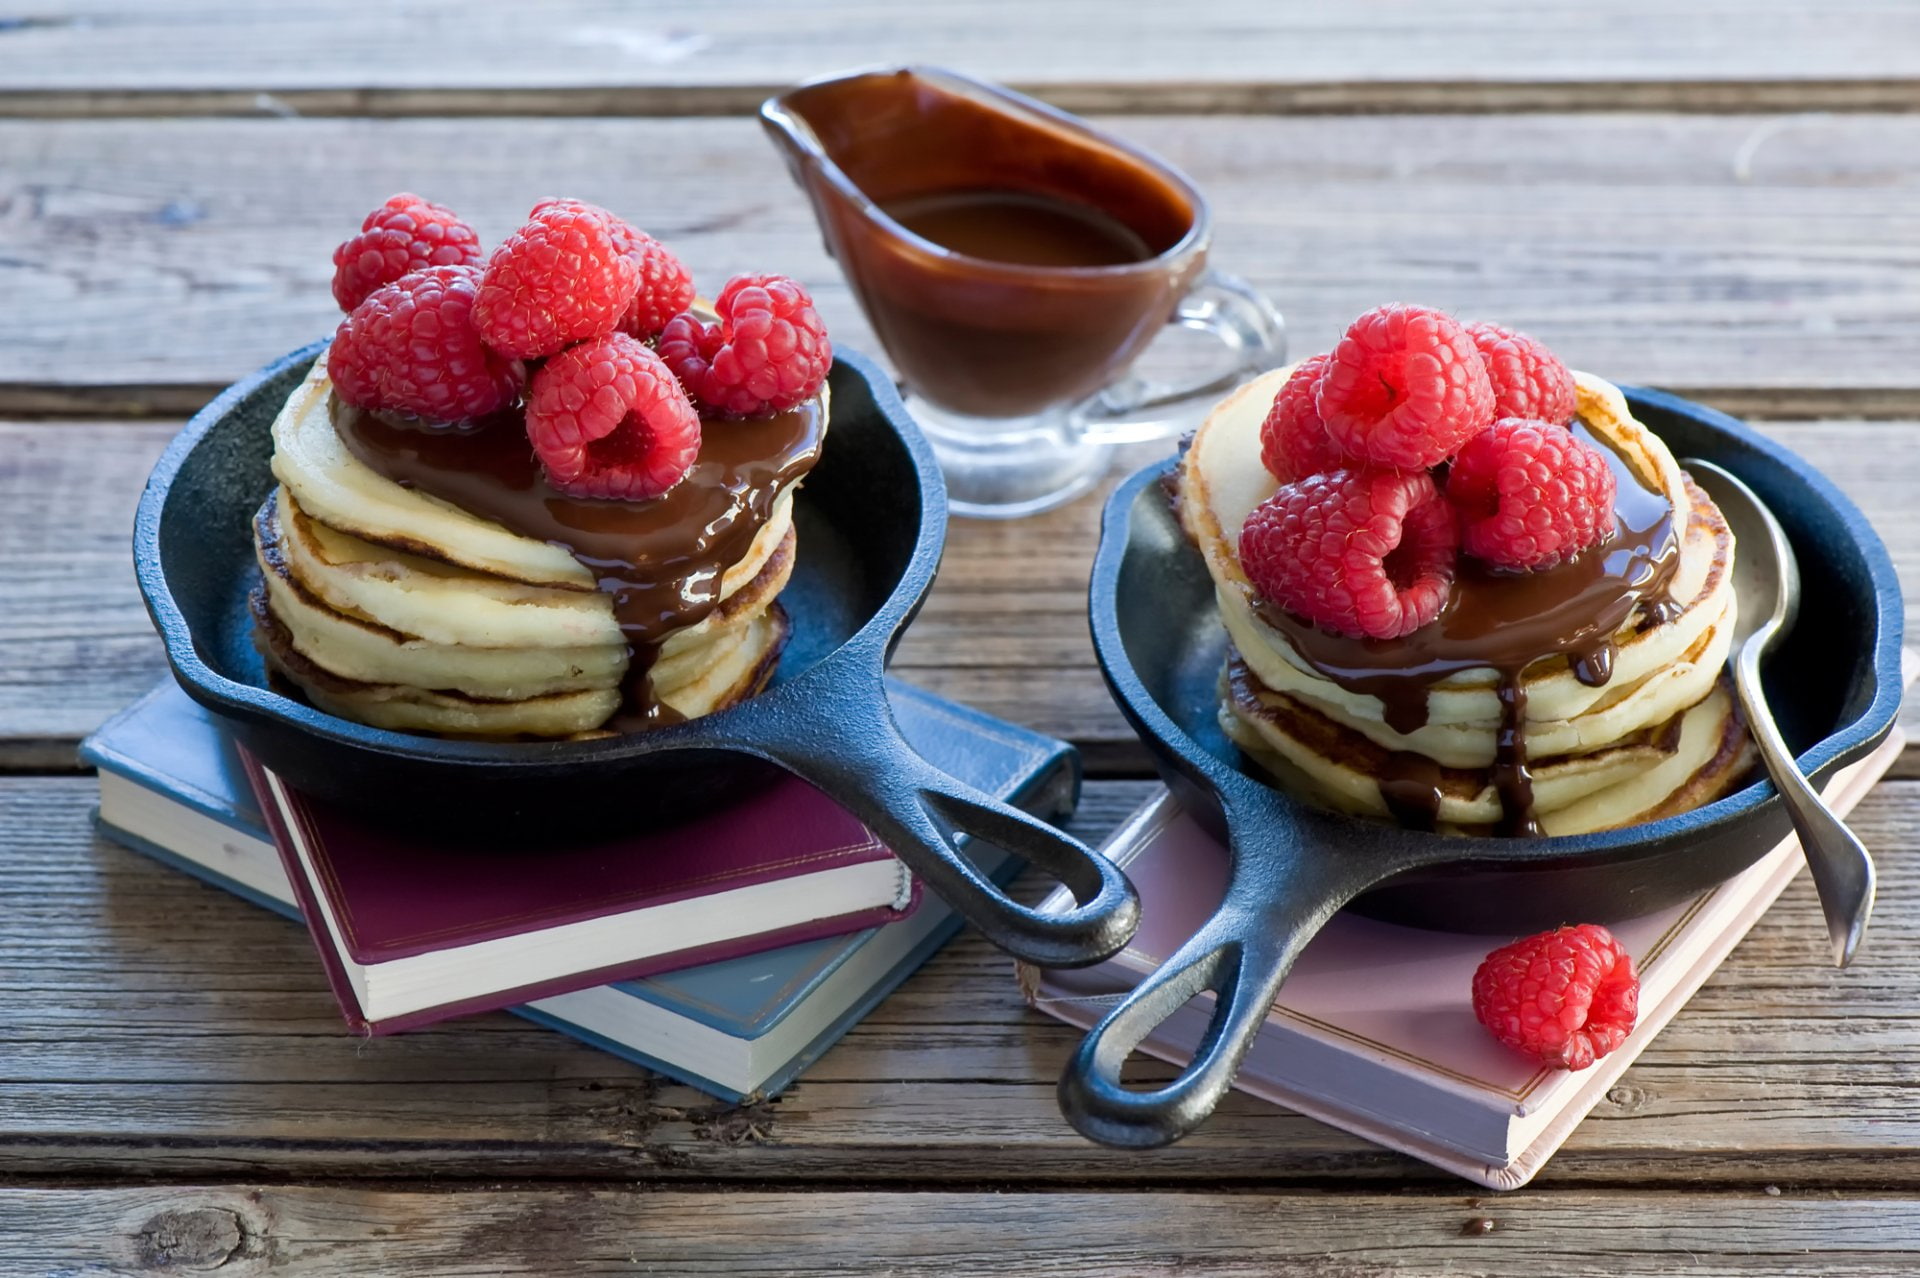 food-pancake-breakfast-chocolate-wallpaper-20131433d8ac9eae6cf2027777155883.jpg